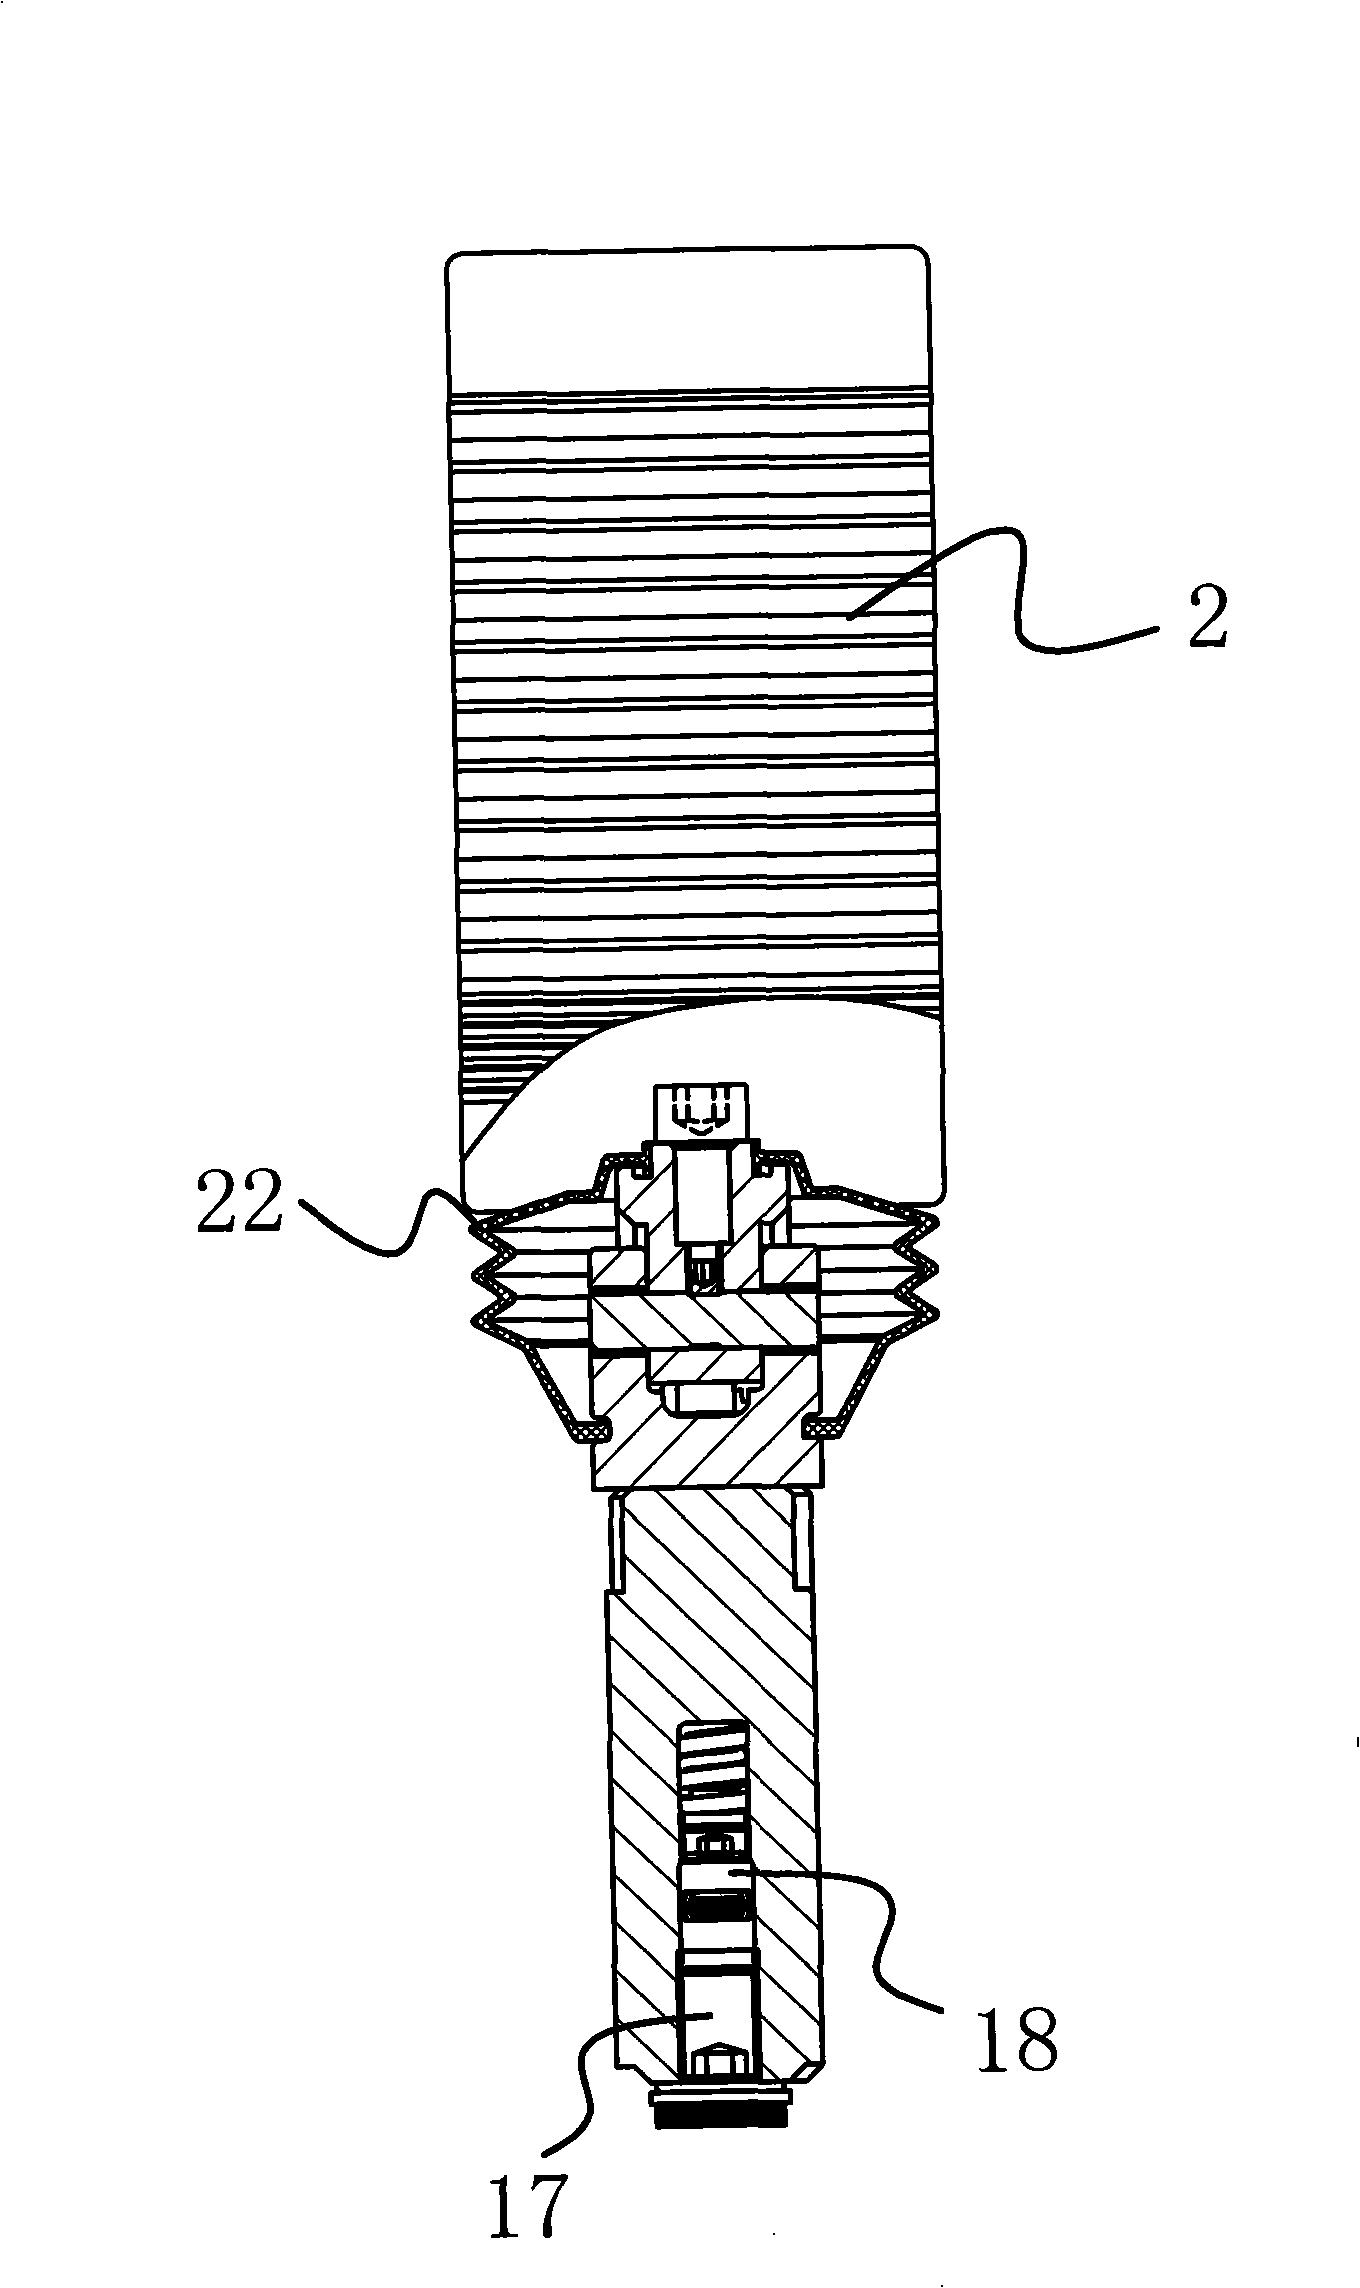 Feet pilot valve